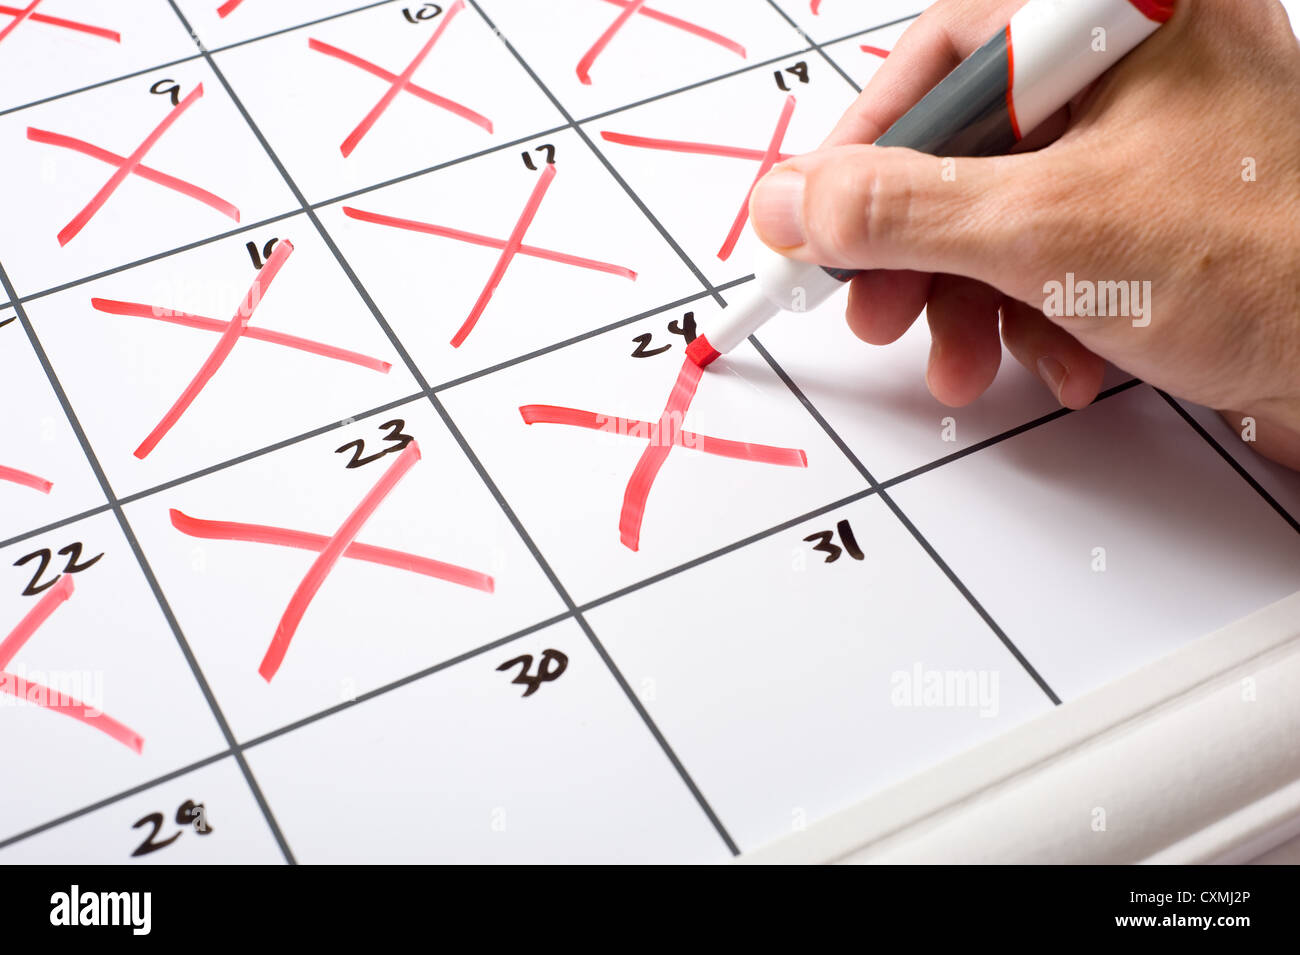 Eine Hand mit einem trockenen löschen Marker x'ing Tage des Monats aus einem Kalender. Laufe der Zeit Konzept. Stockfoto